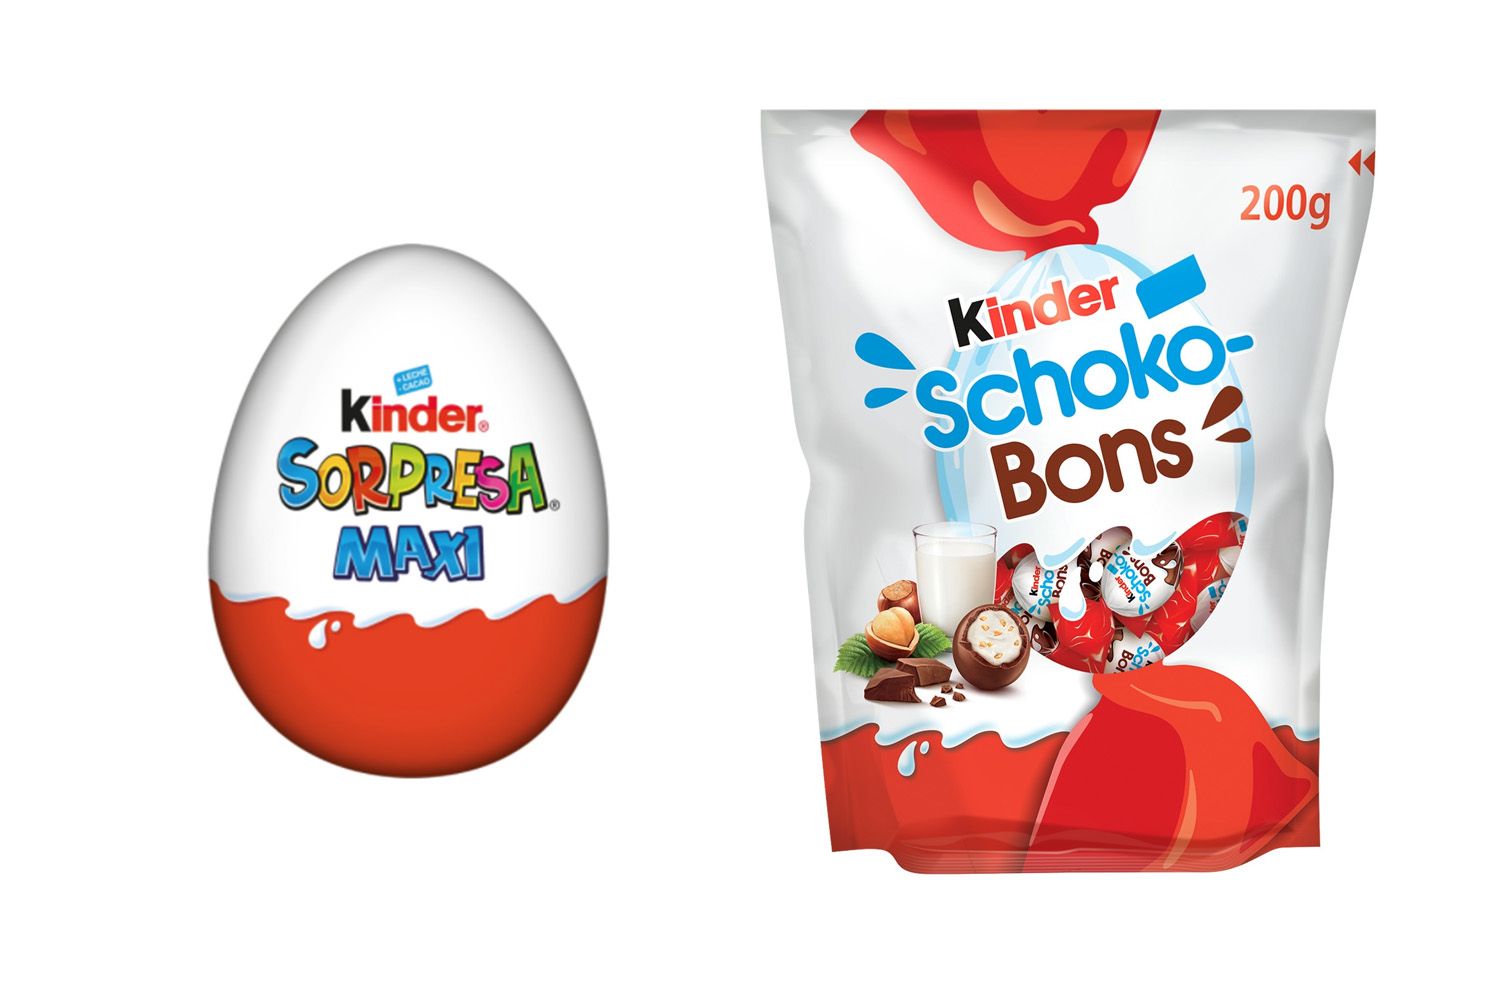 Dos de los productos de Kinder de Ferrero retirados del mercado / KINDER